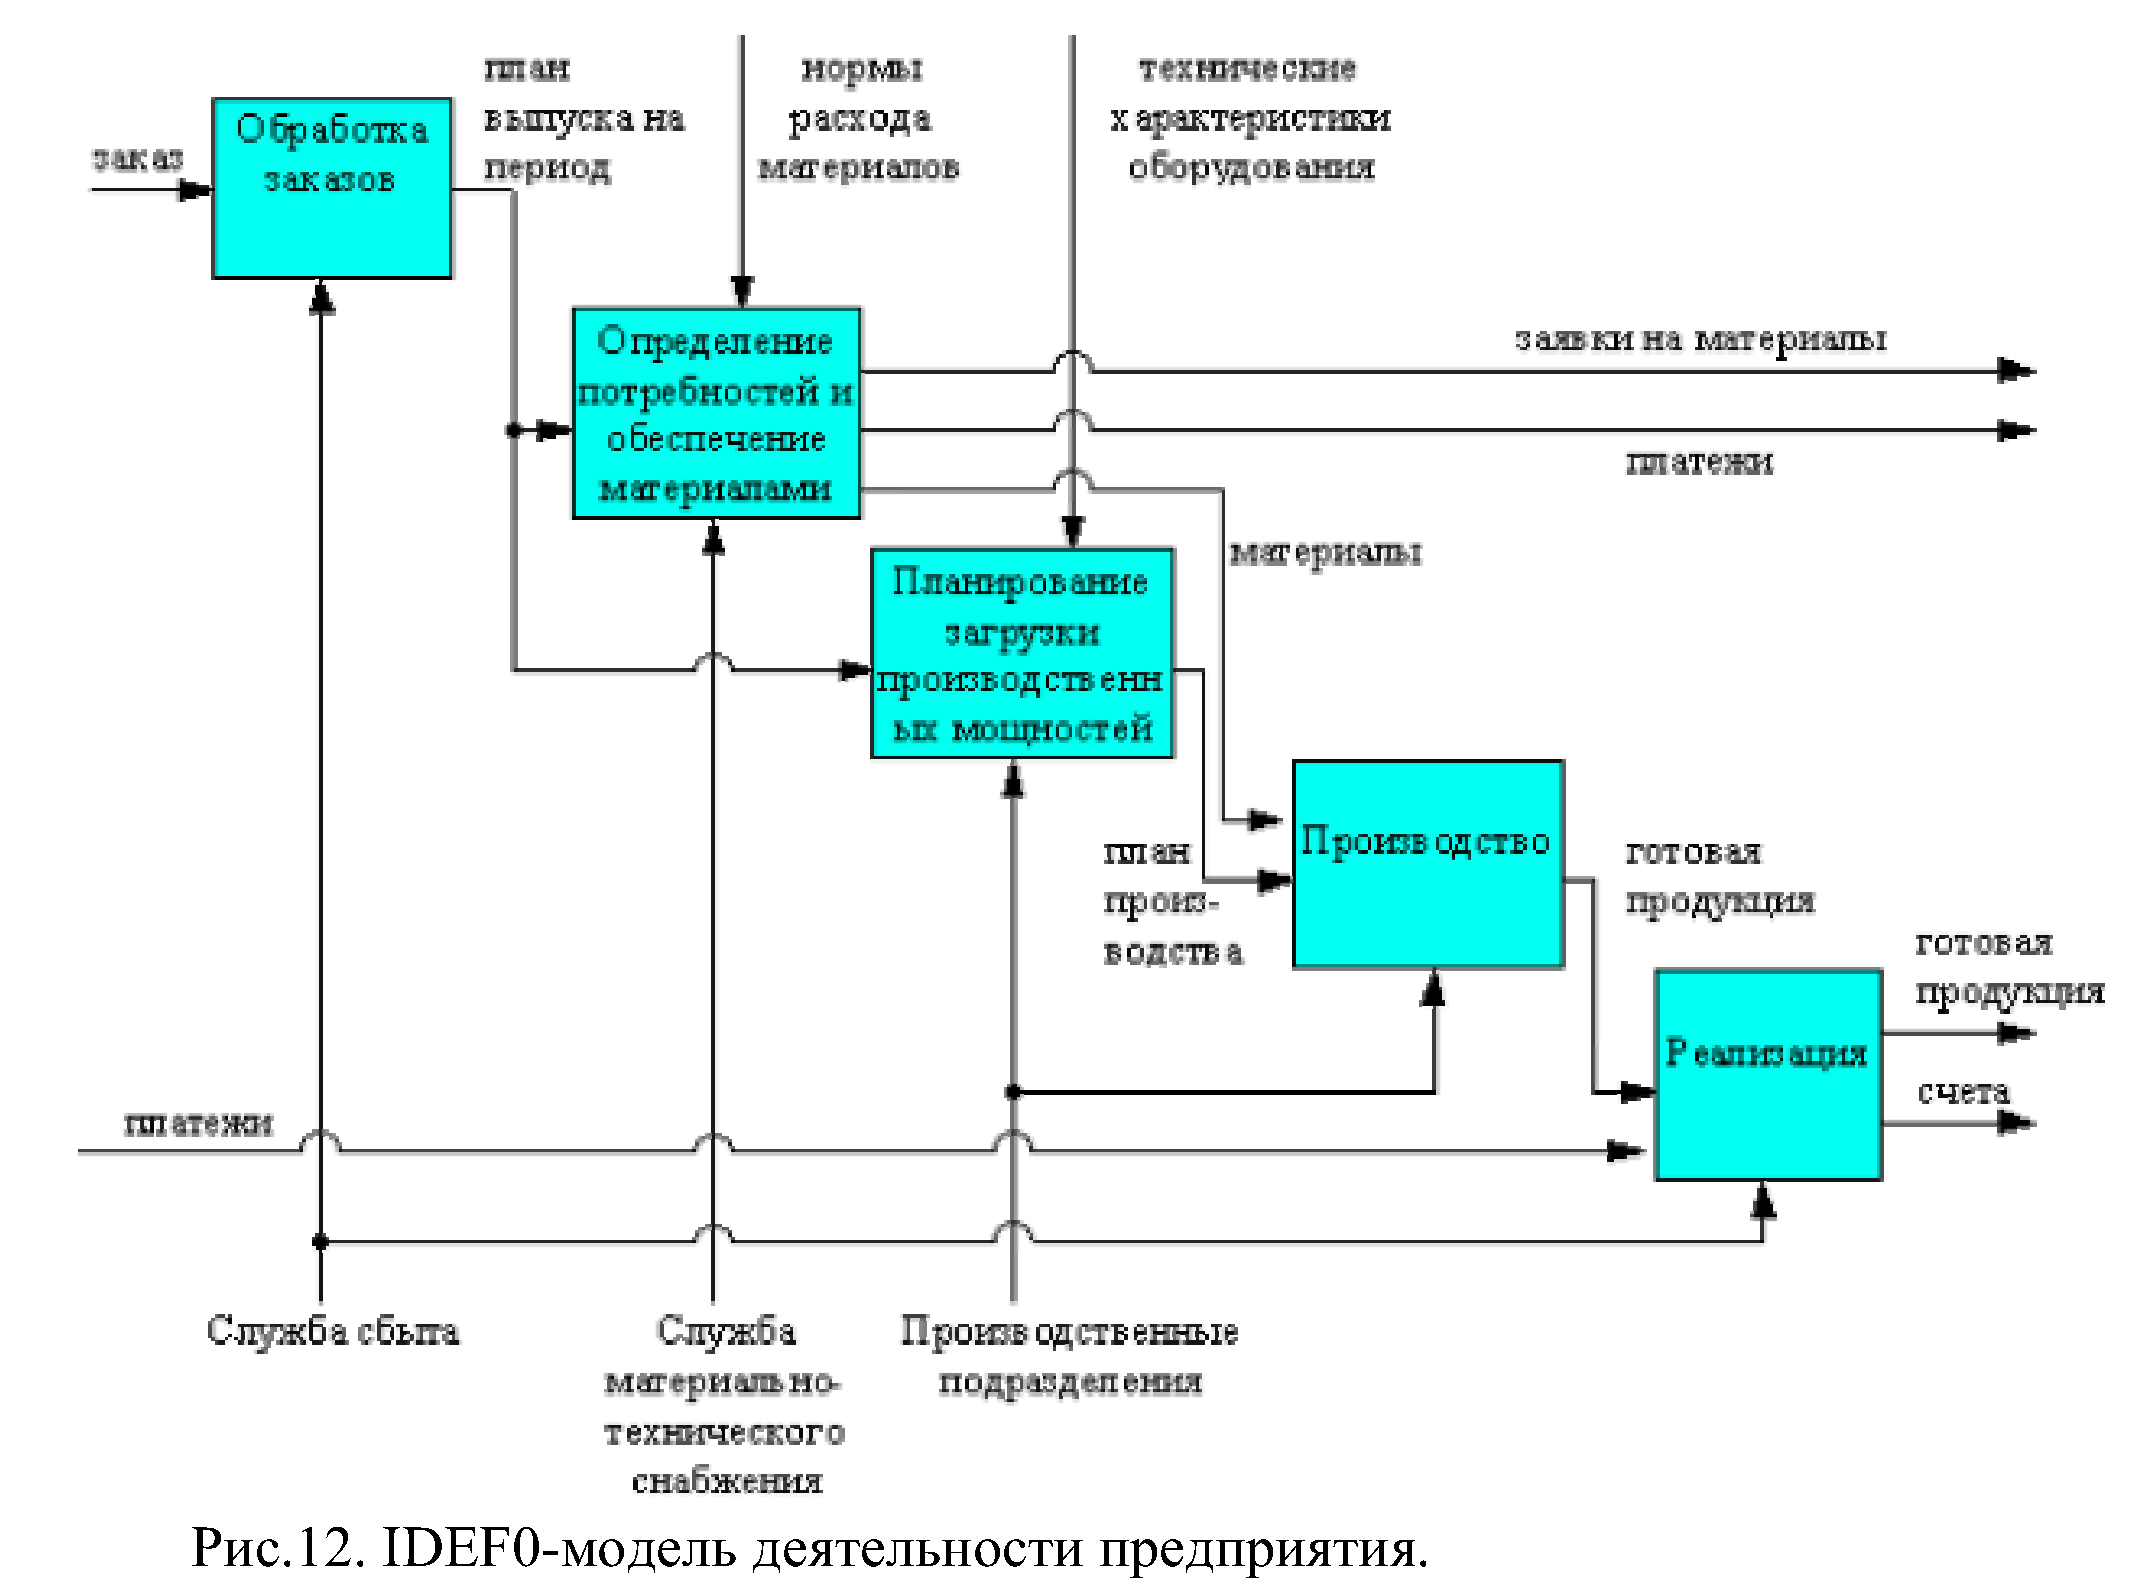 Разработка модели информационной системы. Функциональная диаграмма idef0. Функциональная модель компании idef0. Диаграмма idef0 мессенджера. Функциональная модель в нотации idef0.